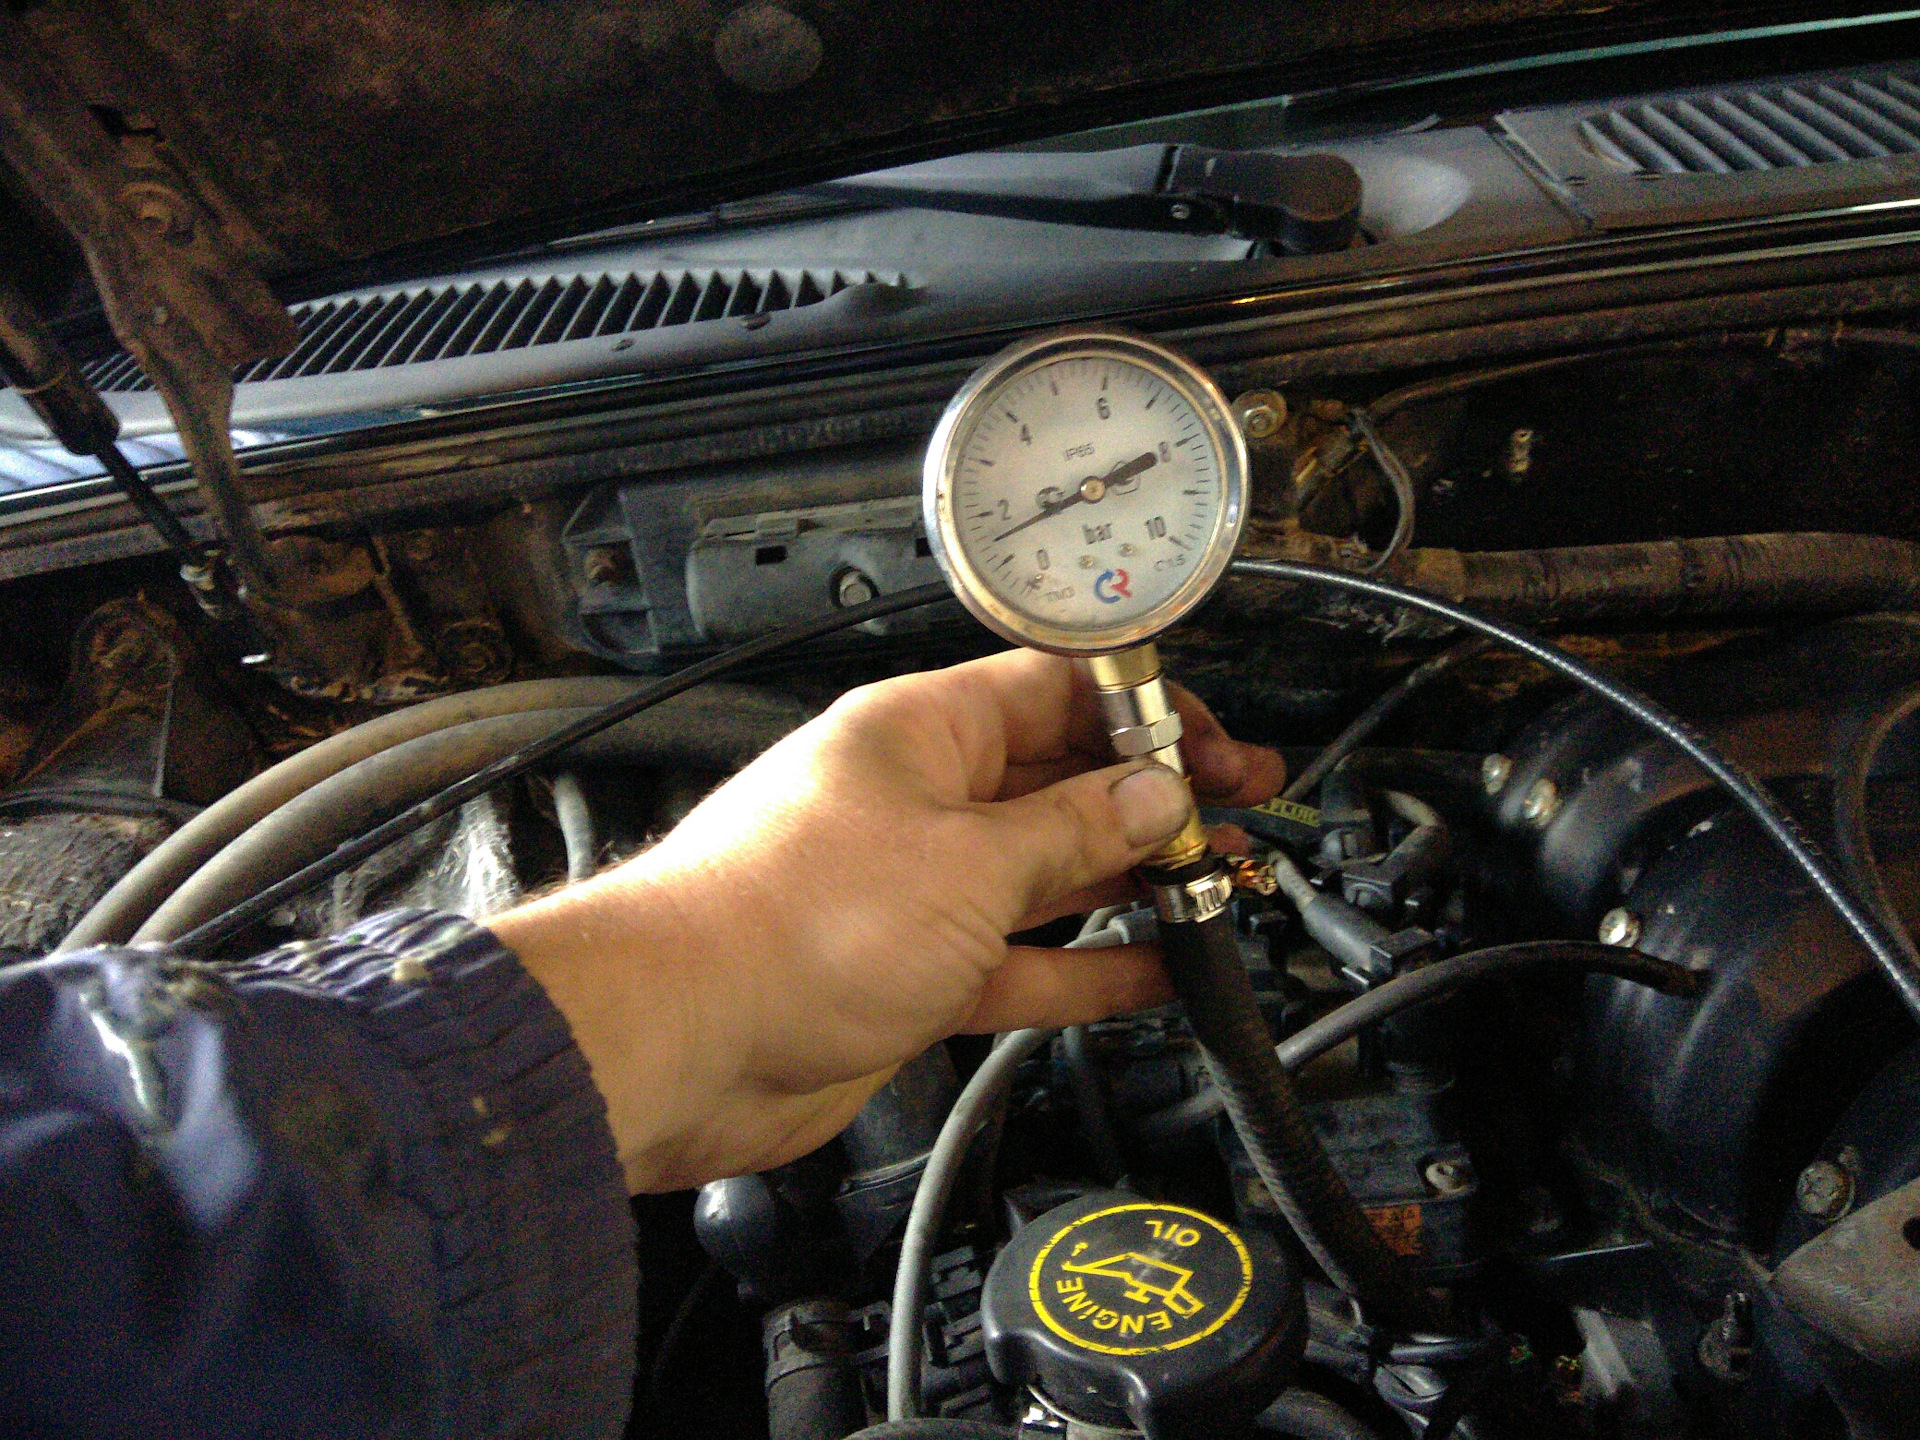 Повышение давления масла в двигателе. Измерение давления топлива 2107. Замер давления топлива Форд Транзит дизель. Манометр для измерения давления топлива дизельного двигателя Скания. Форд галакси 2 литра дизель давление в топливной рампе.